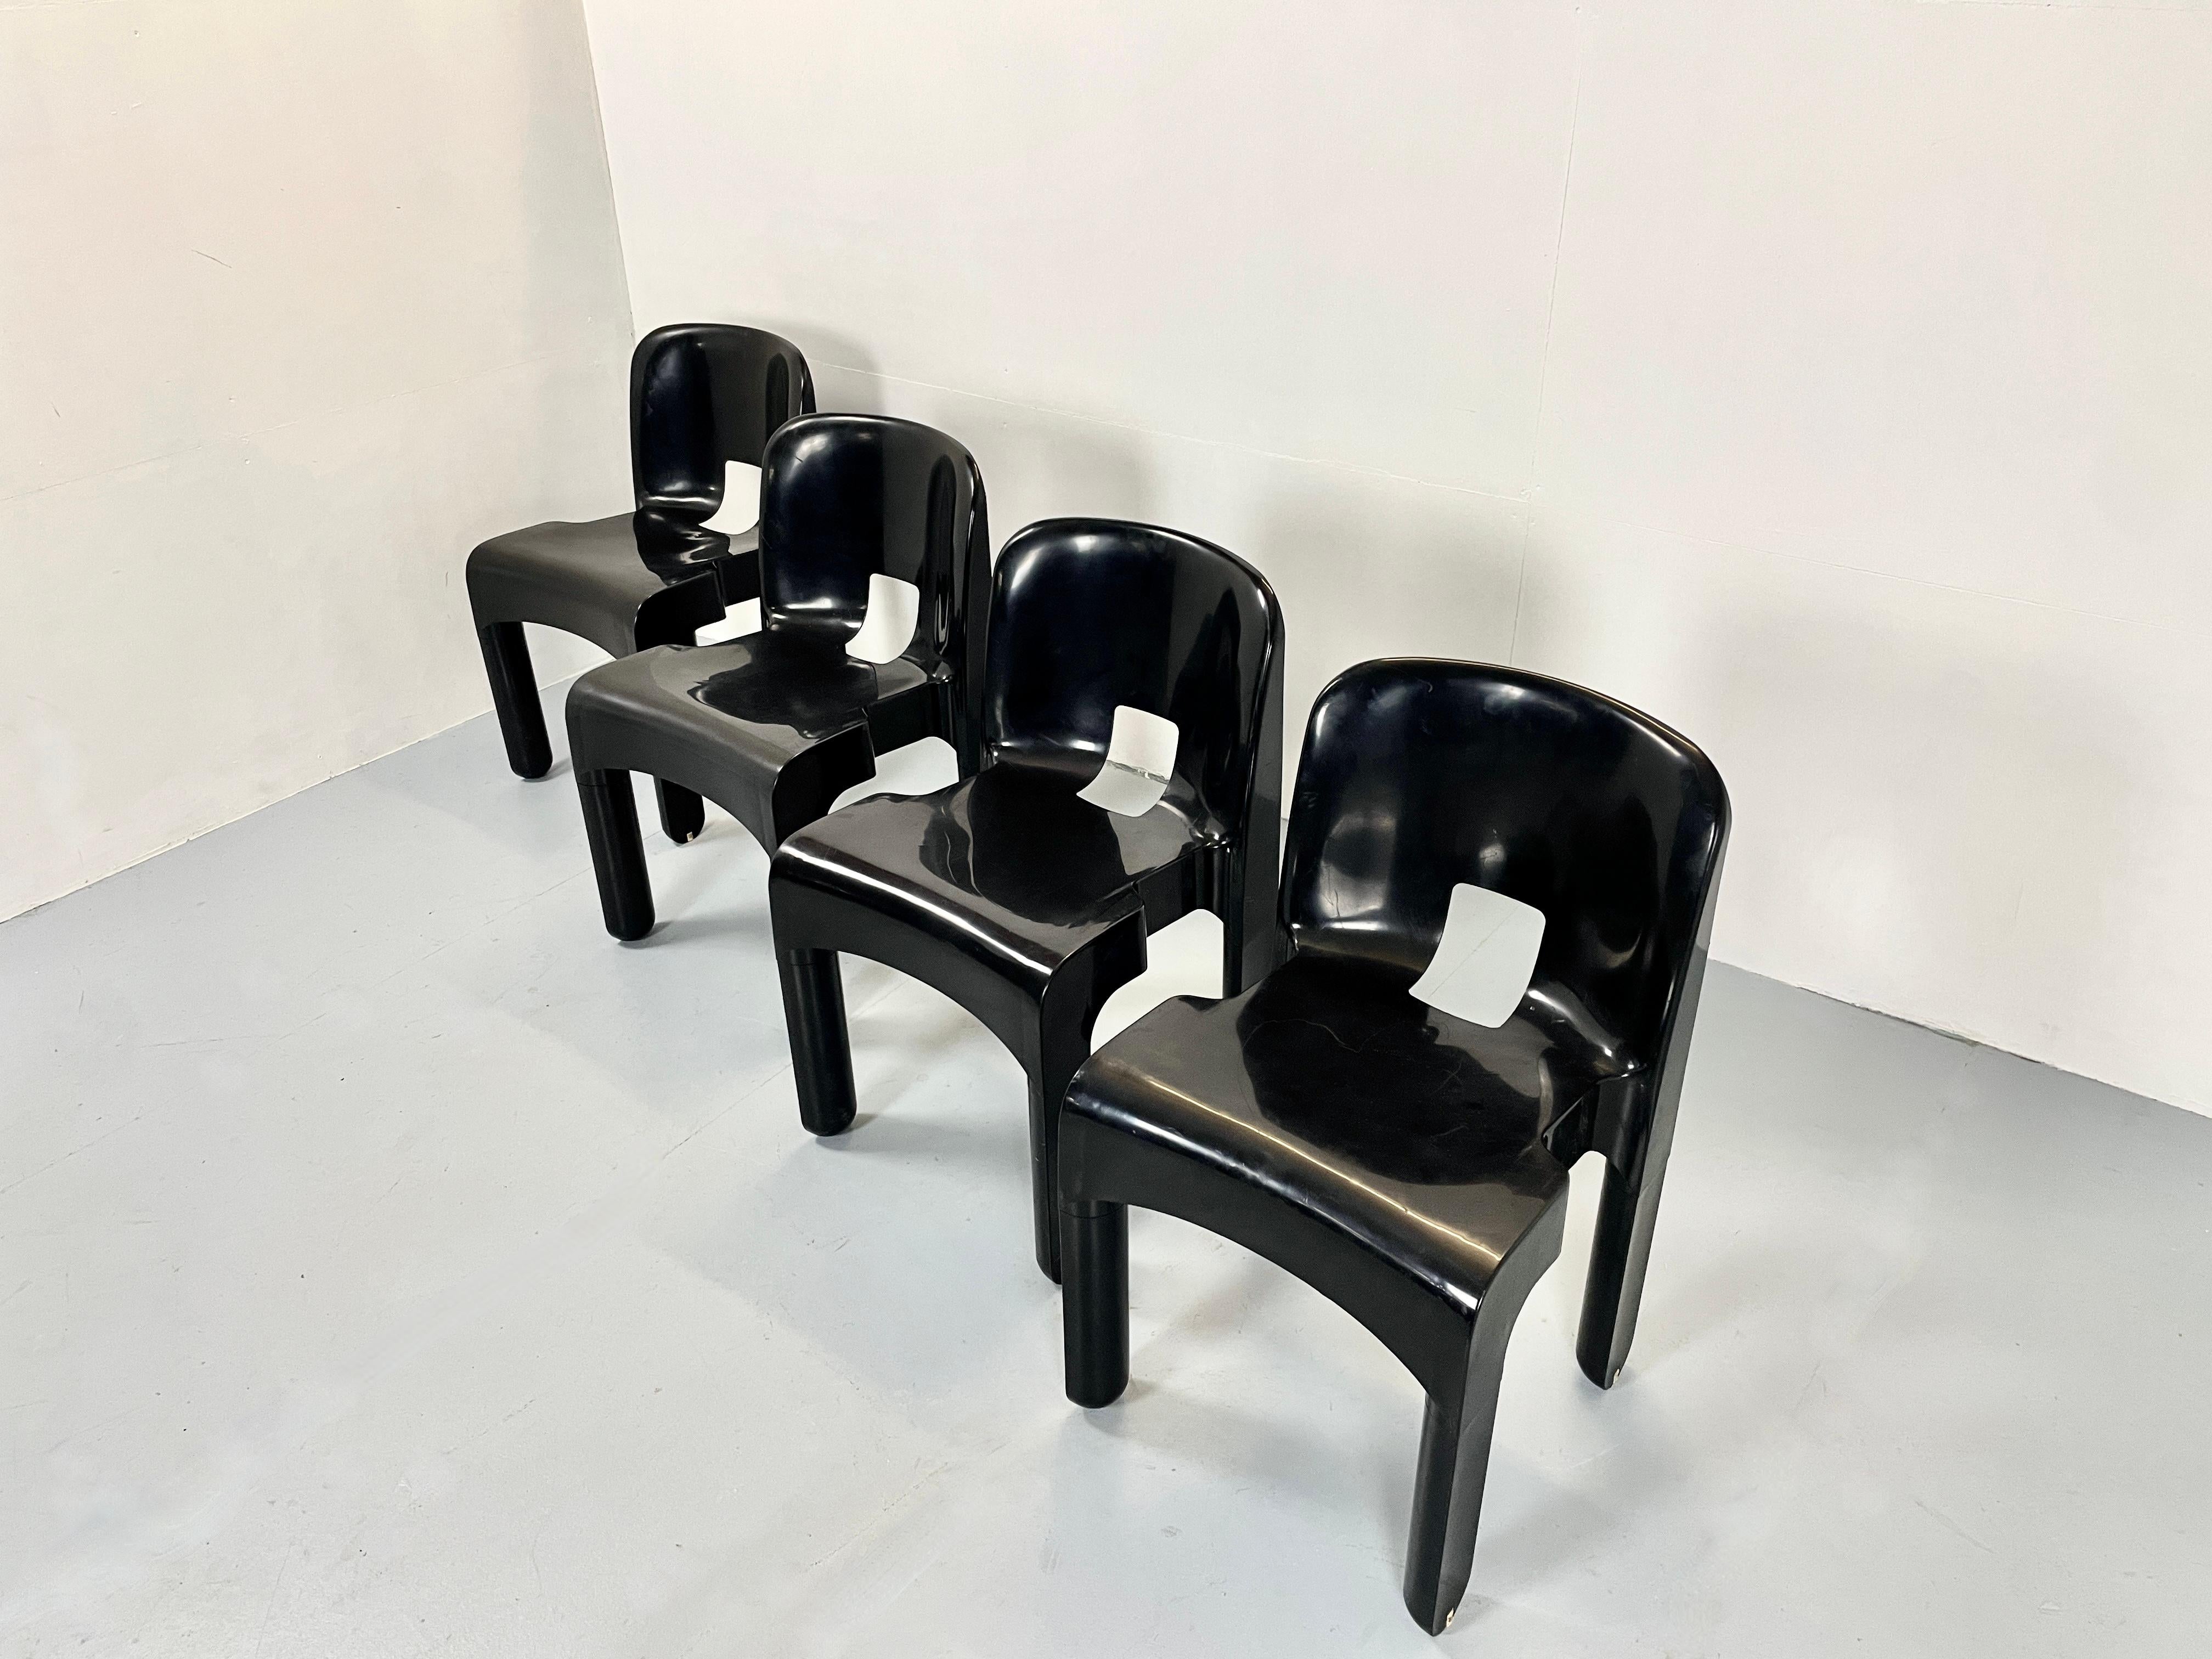 Bel ensemble de huit chaises italiennes par Joe Colombo.

La chaise universelle 4867 en plastique noir est une véritable icône italienne.
Fabriqué et estampillé par Kartelle Italie.

La chaise Universale est l'une des premières chaises en plastique